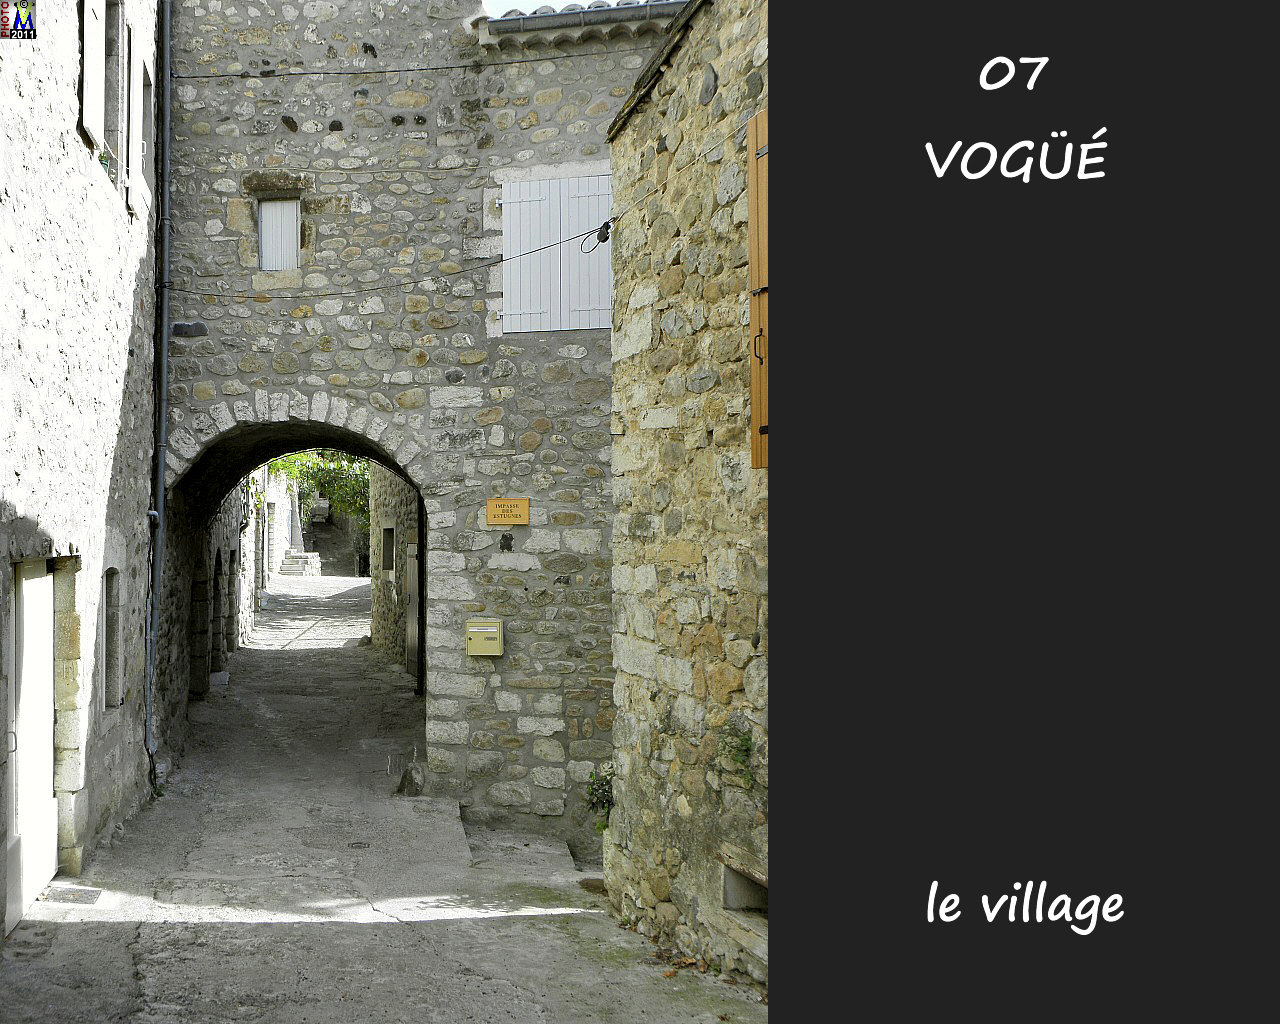 07VOGUE_village_132.jpg